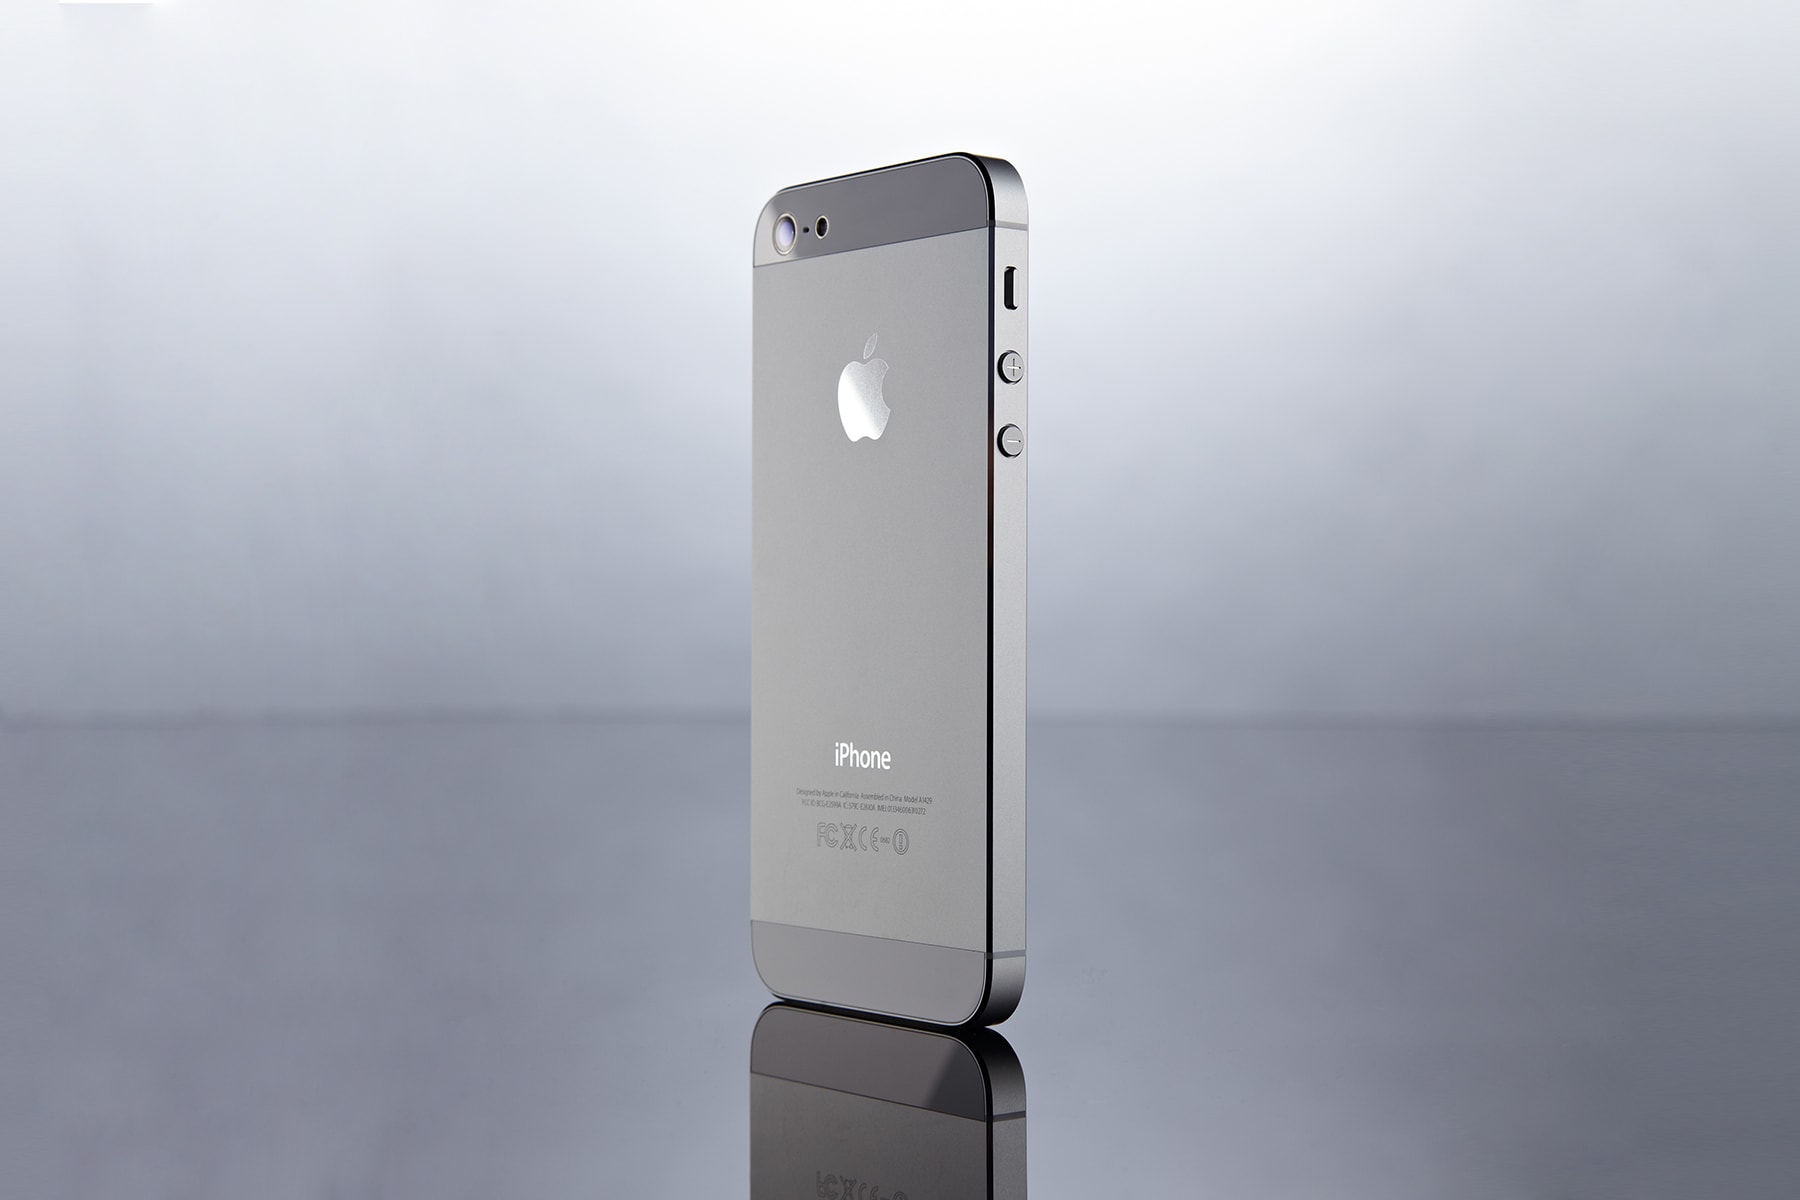 iPhone SE iPhone XE アップル アイフォン アイホン 後継機 コンパクト サイズ 4.8インチ 新端末 2019年 秋 発売 